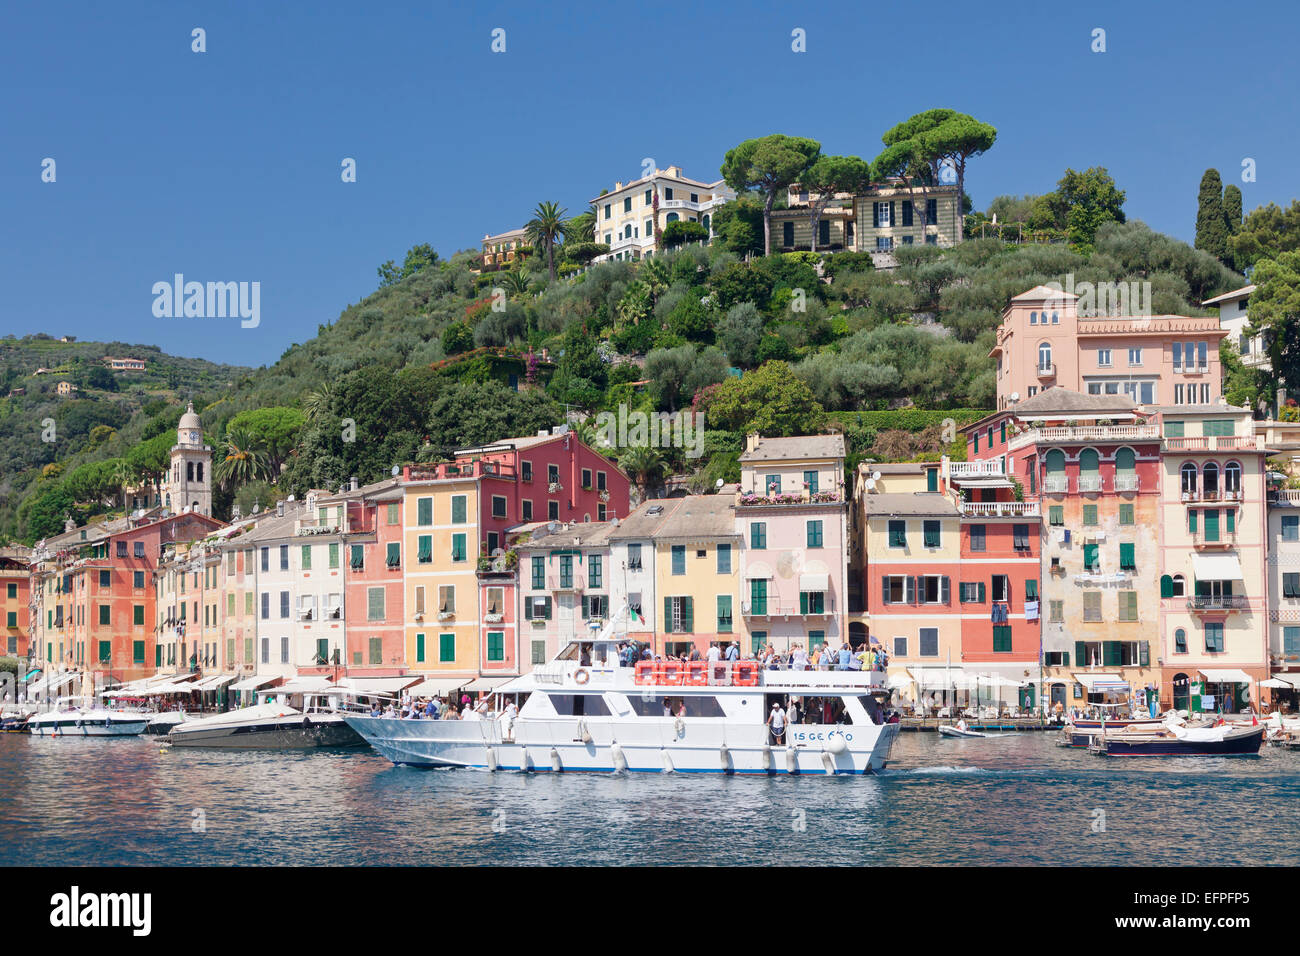 Excursion boat in the Harbour of Portofino, Riviera di Levante, Province of Genoa, Liguria, Italy, Europe Stock Photo